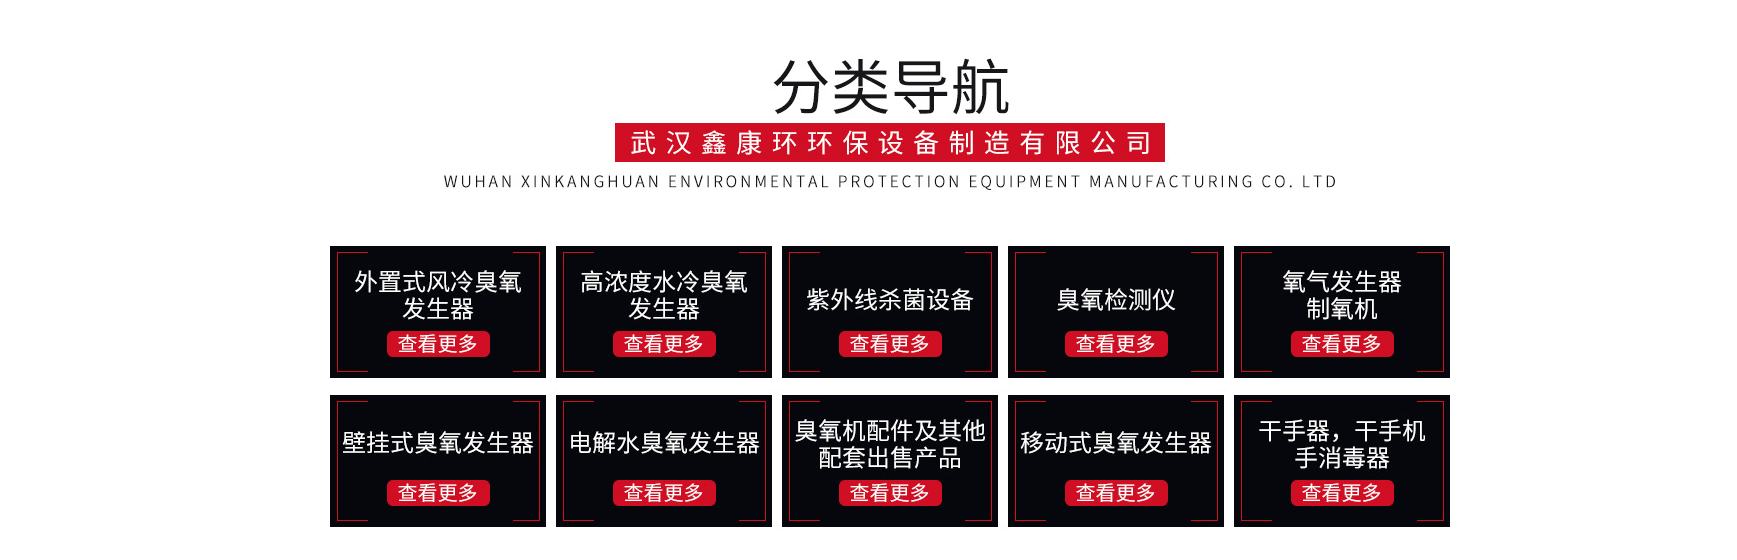 武汉鑫康环环保设备制造有限公司